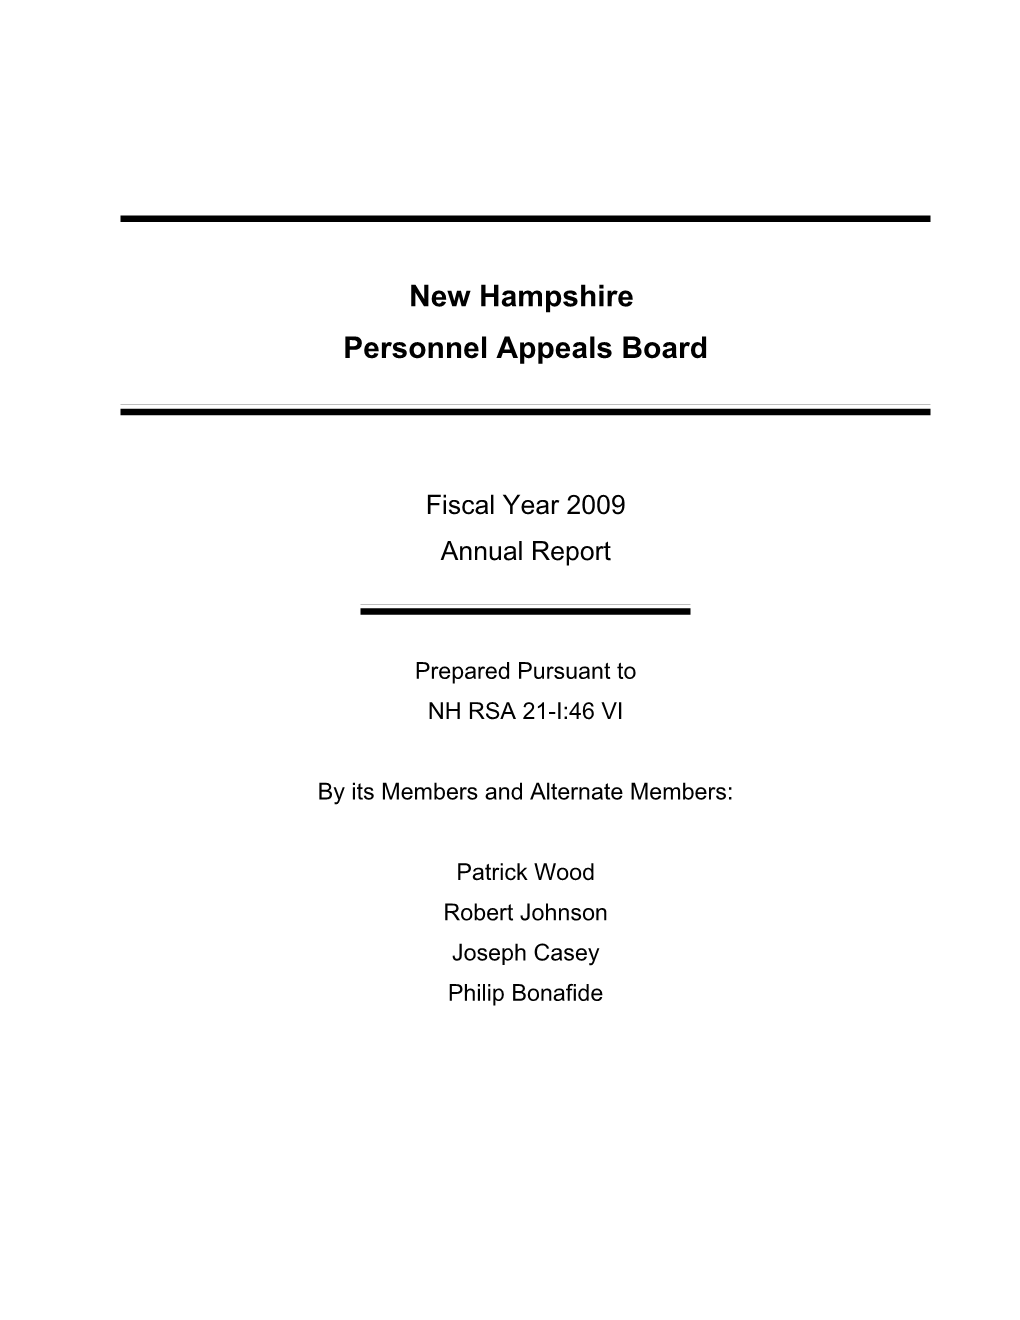 Personnel Appeals Board